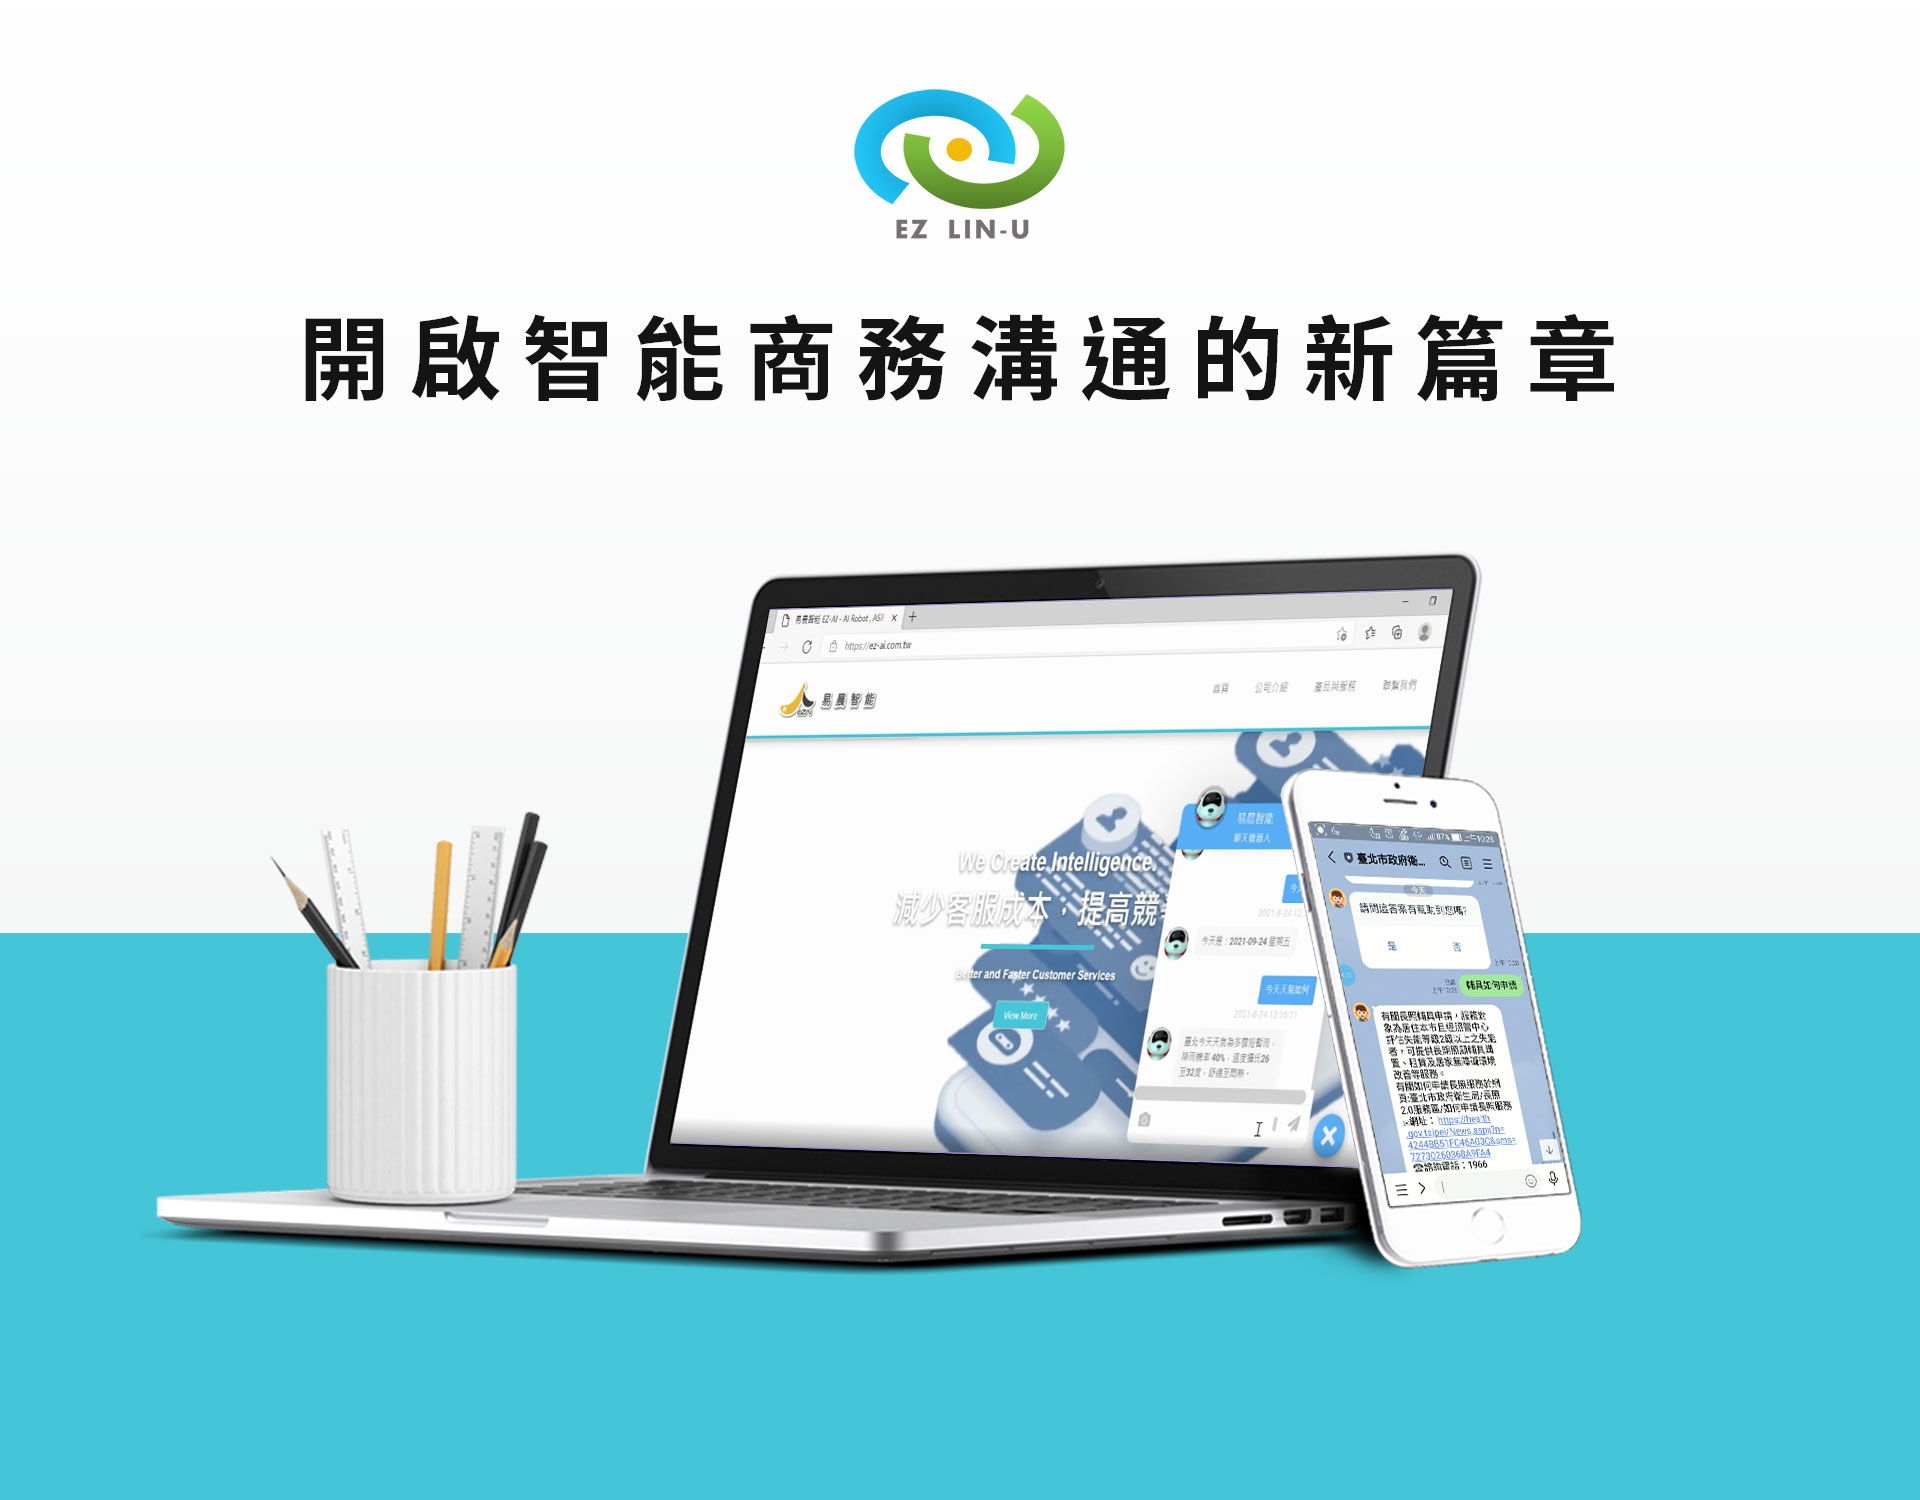 易晨與華研聯手發佈EZ LIN-U智能助理產品 